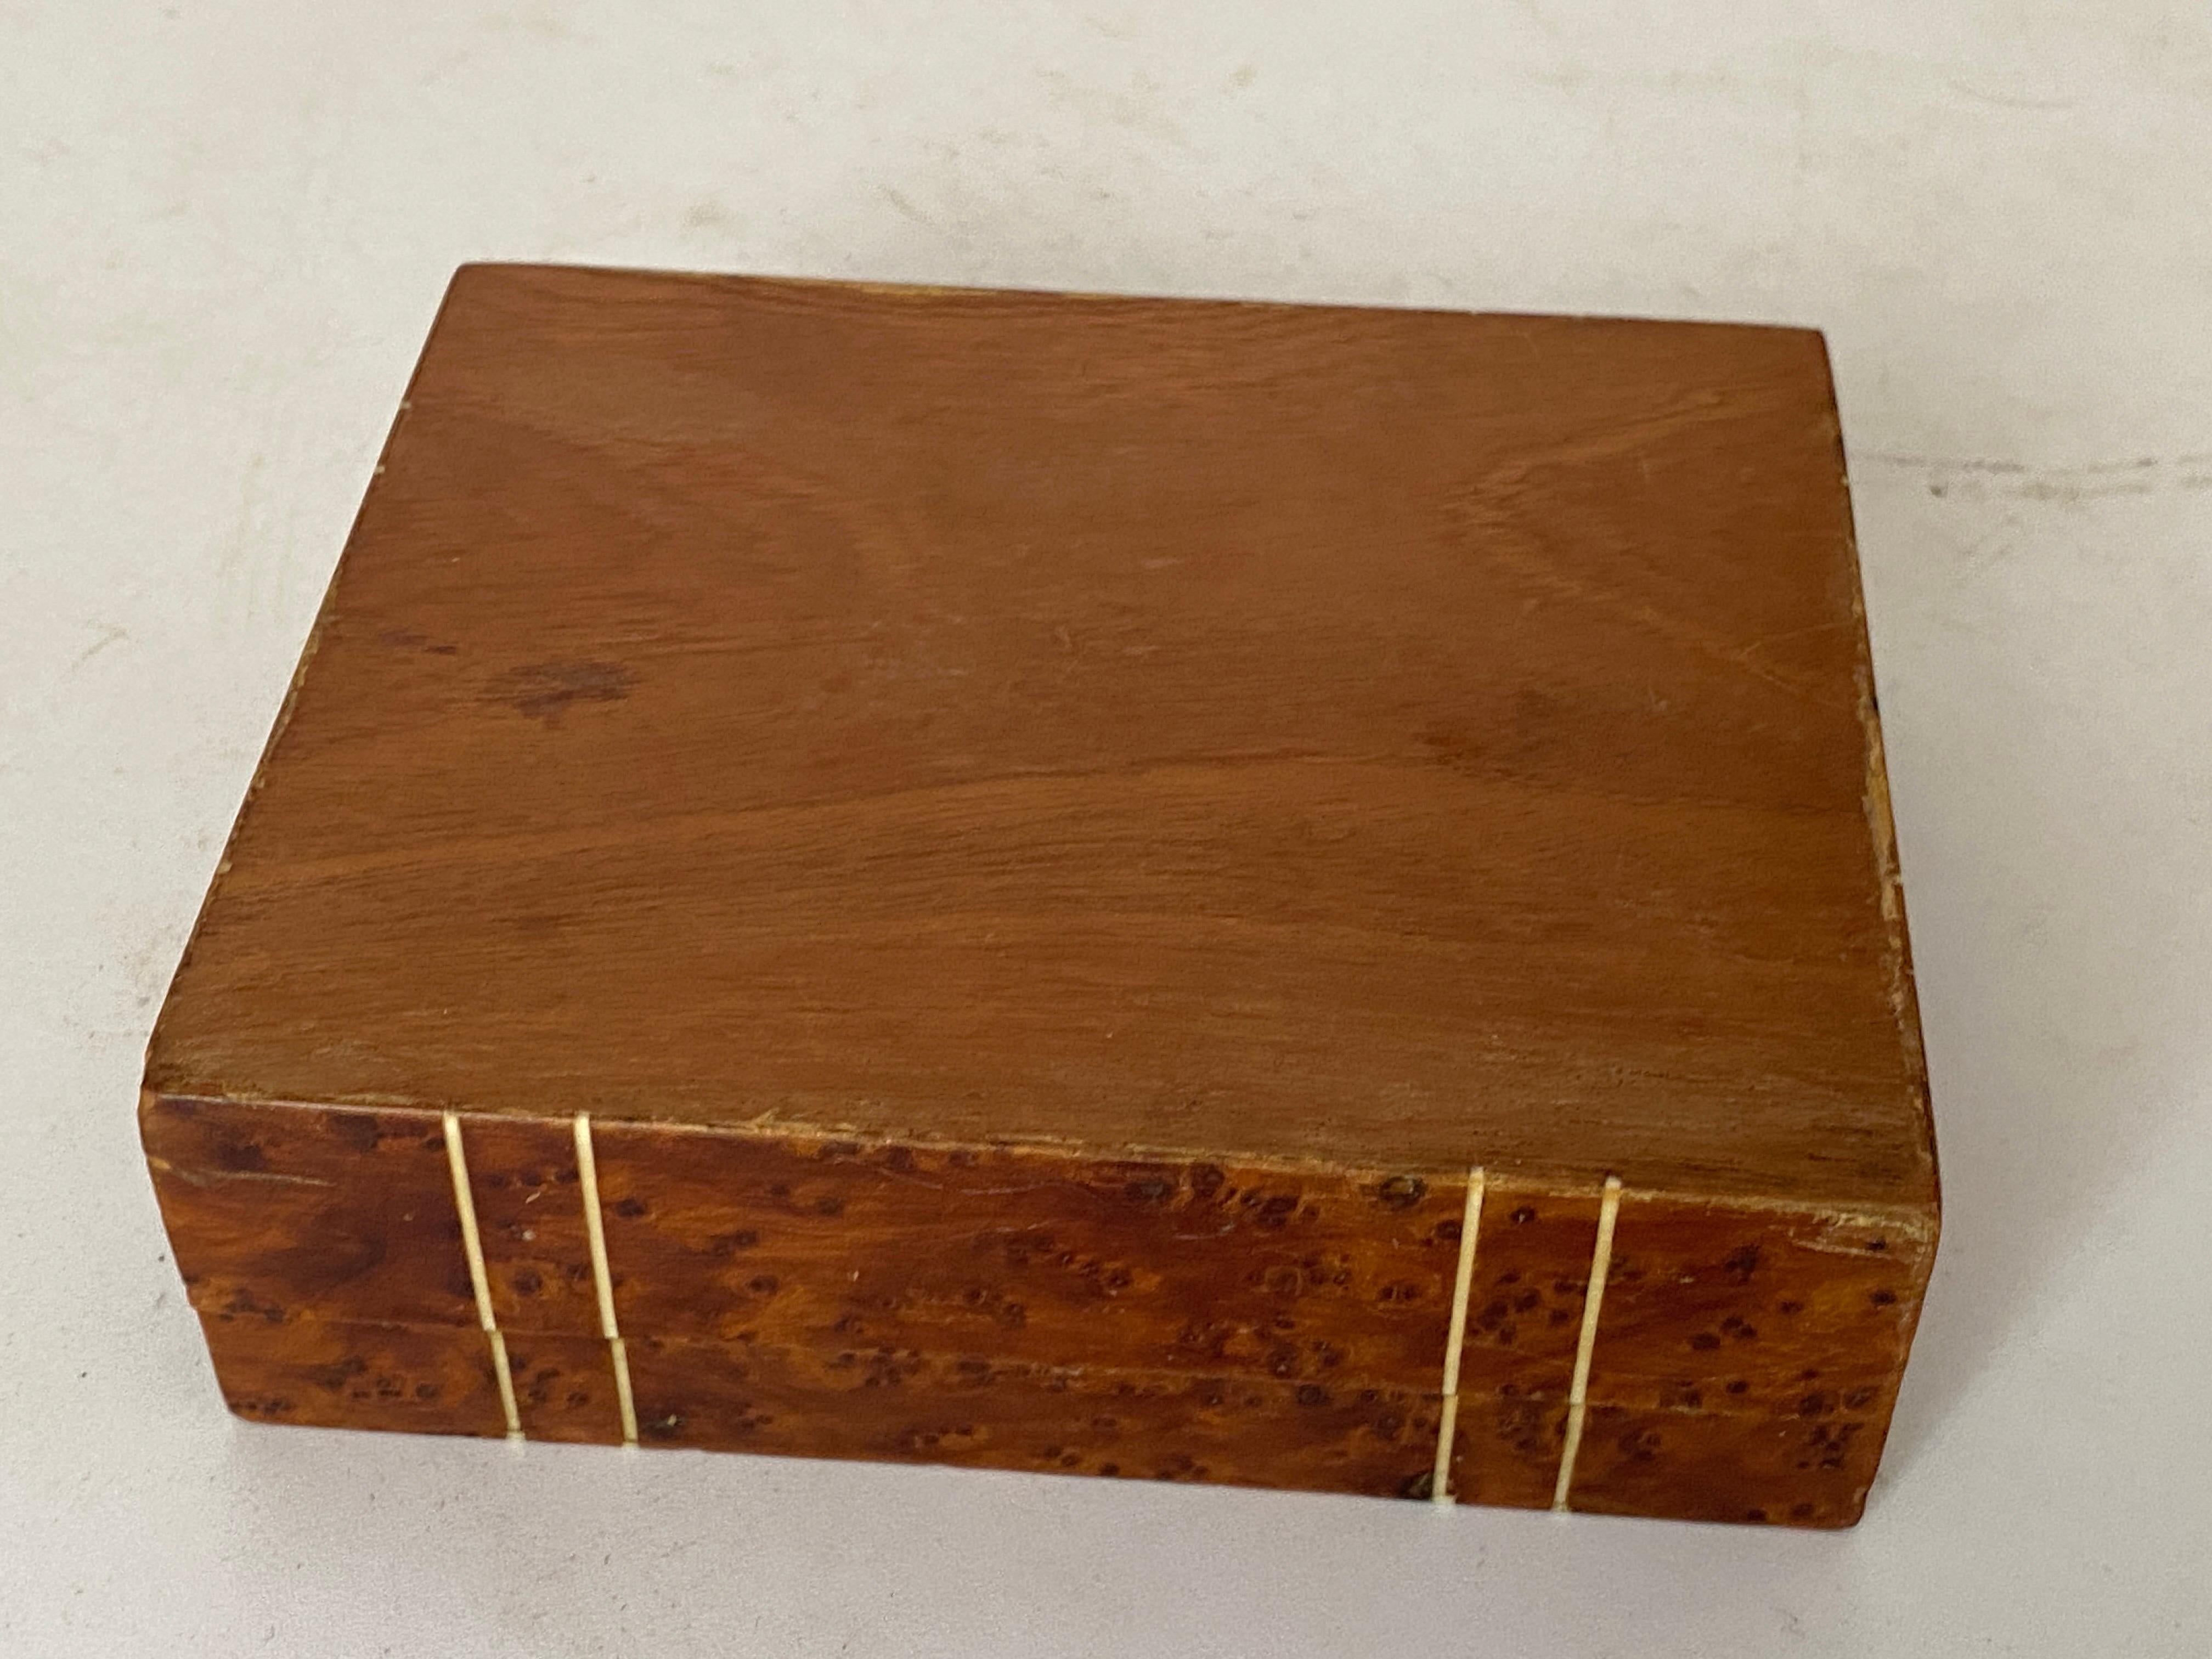 Cette boîte est en bois de ronce. Il a été fabriqué en France dans les années 1870. Il est de couleur marron et en bon état. 
Couleur marron.